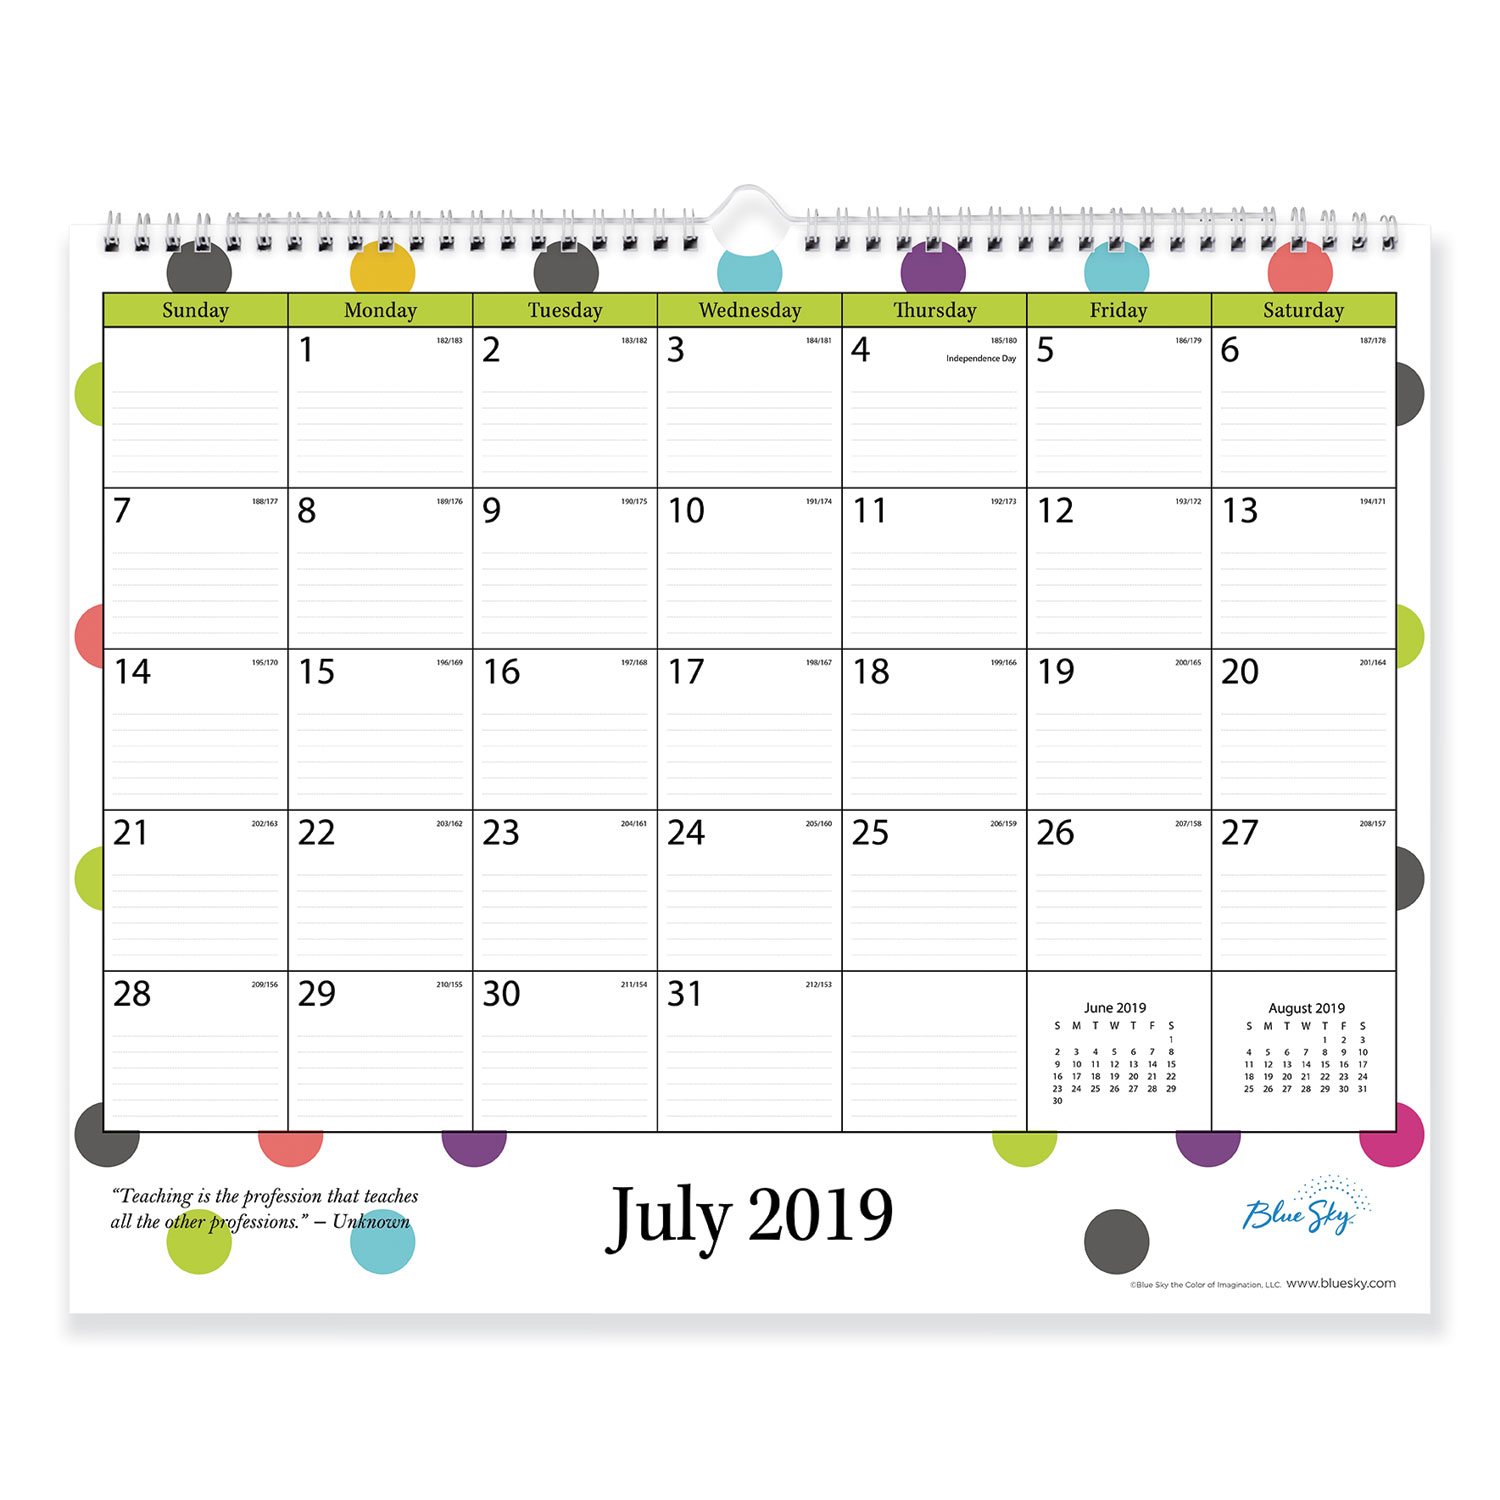 Teacher Dots Academic Year Wall Calendar, 15 x 12, Asst Color Dots, 2019-2020